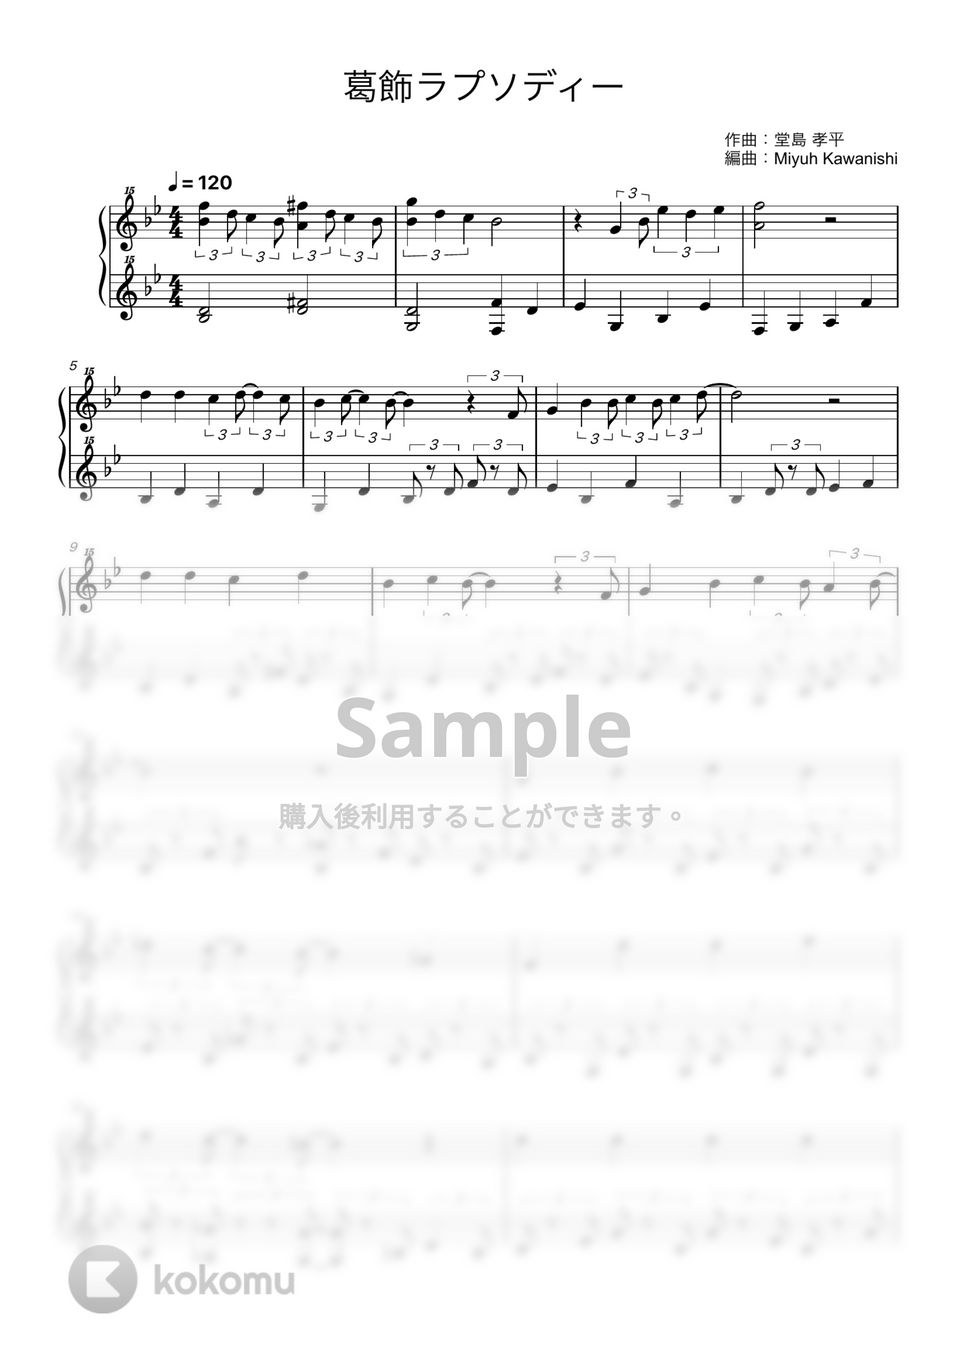 堂島 孝平 - 葛飾ラプソディー (トイピアノ / 32鍵盤 / こち亀) by 川西三裕